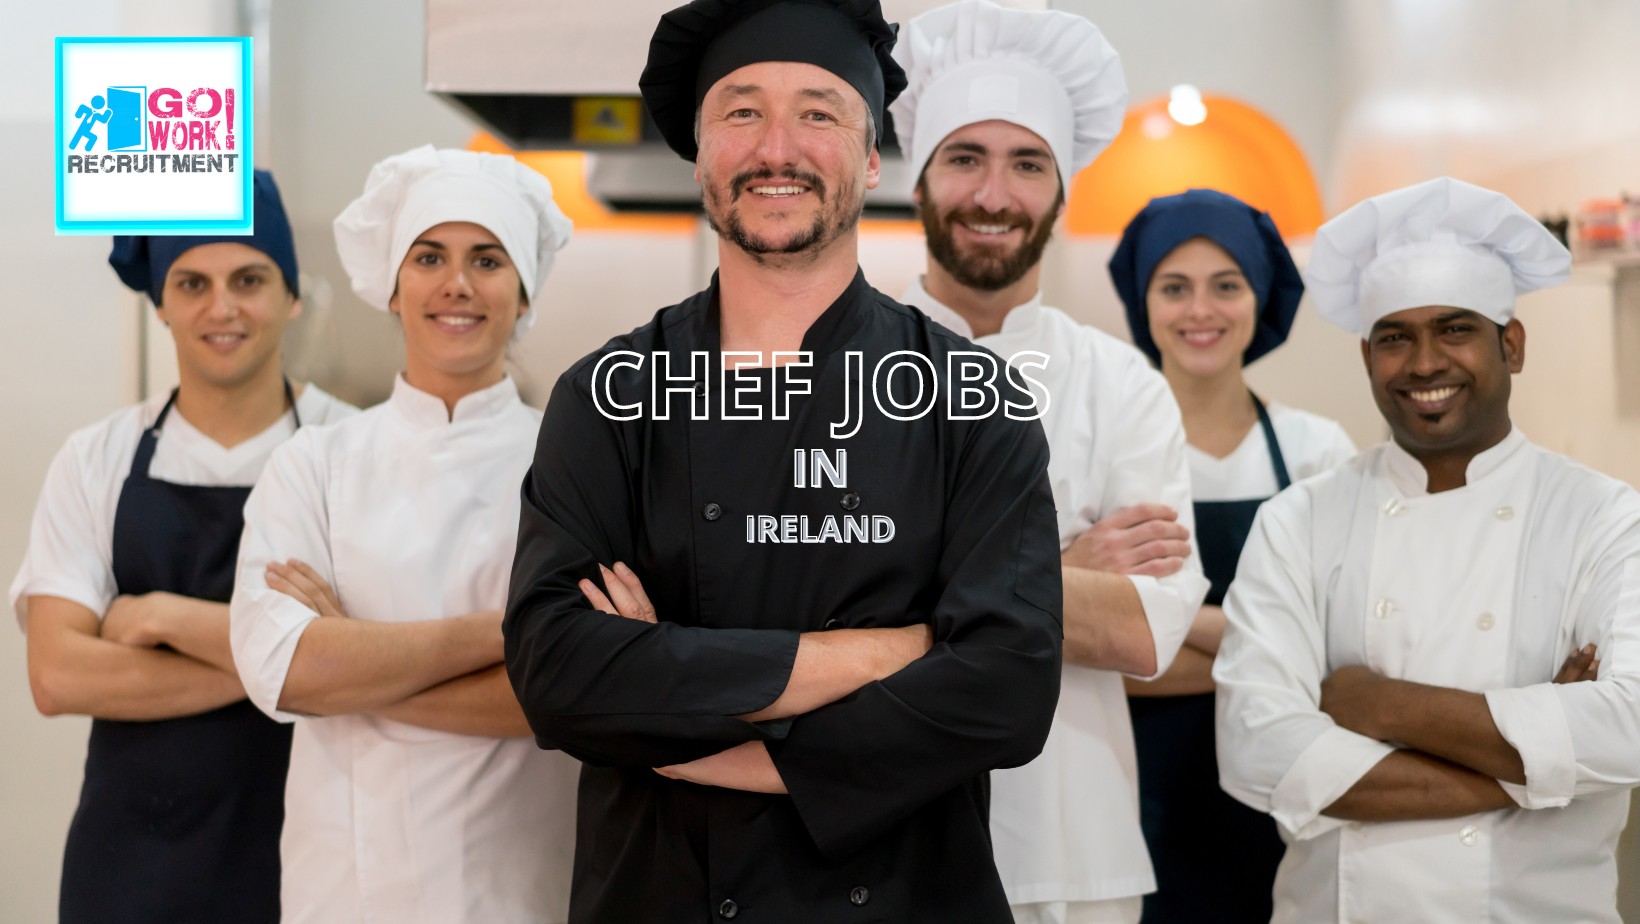 Chef jobs in Ireland